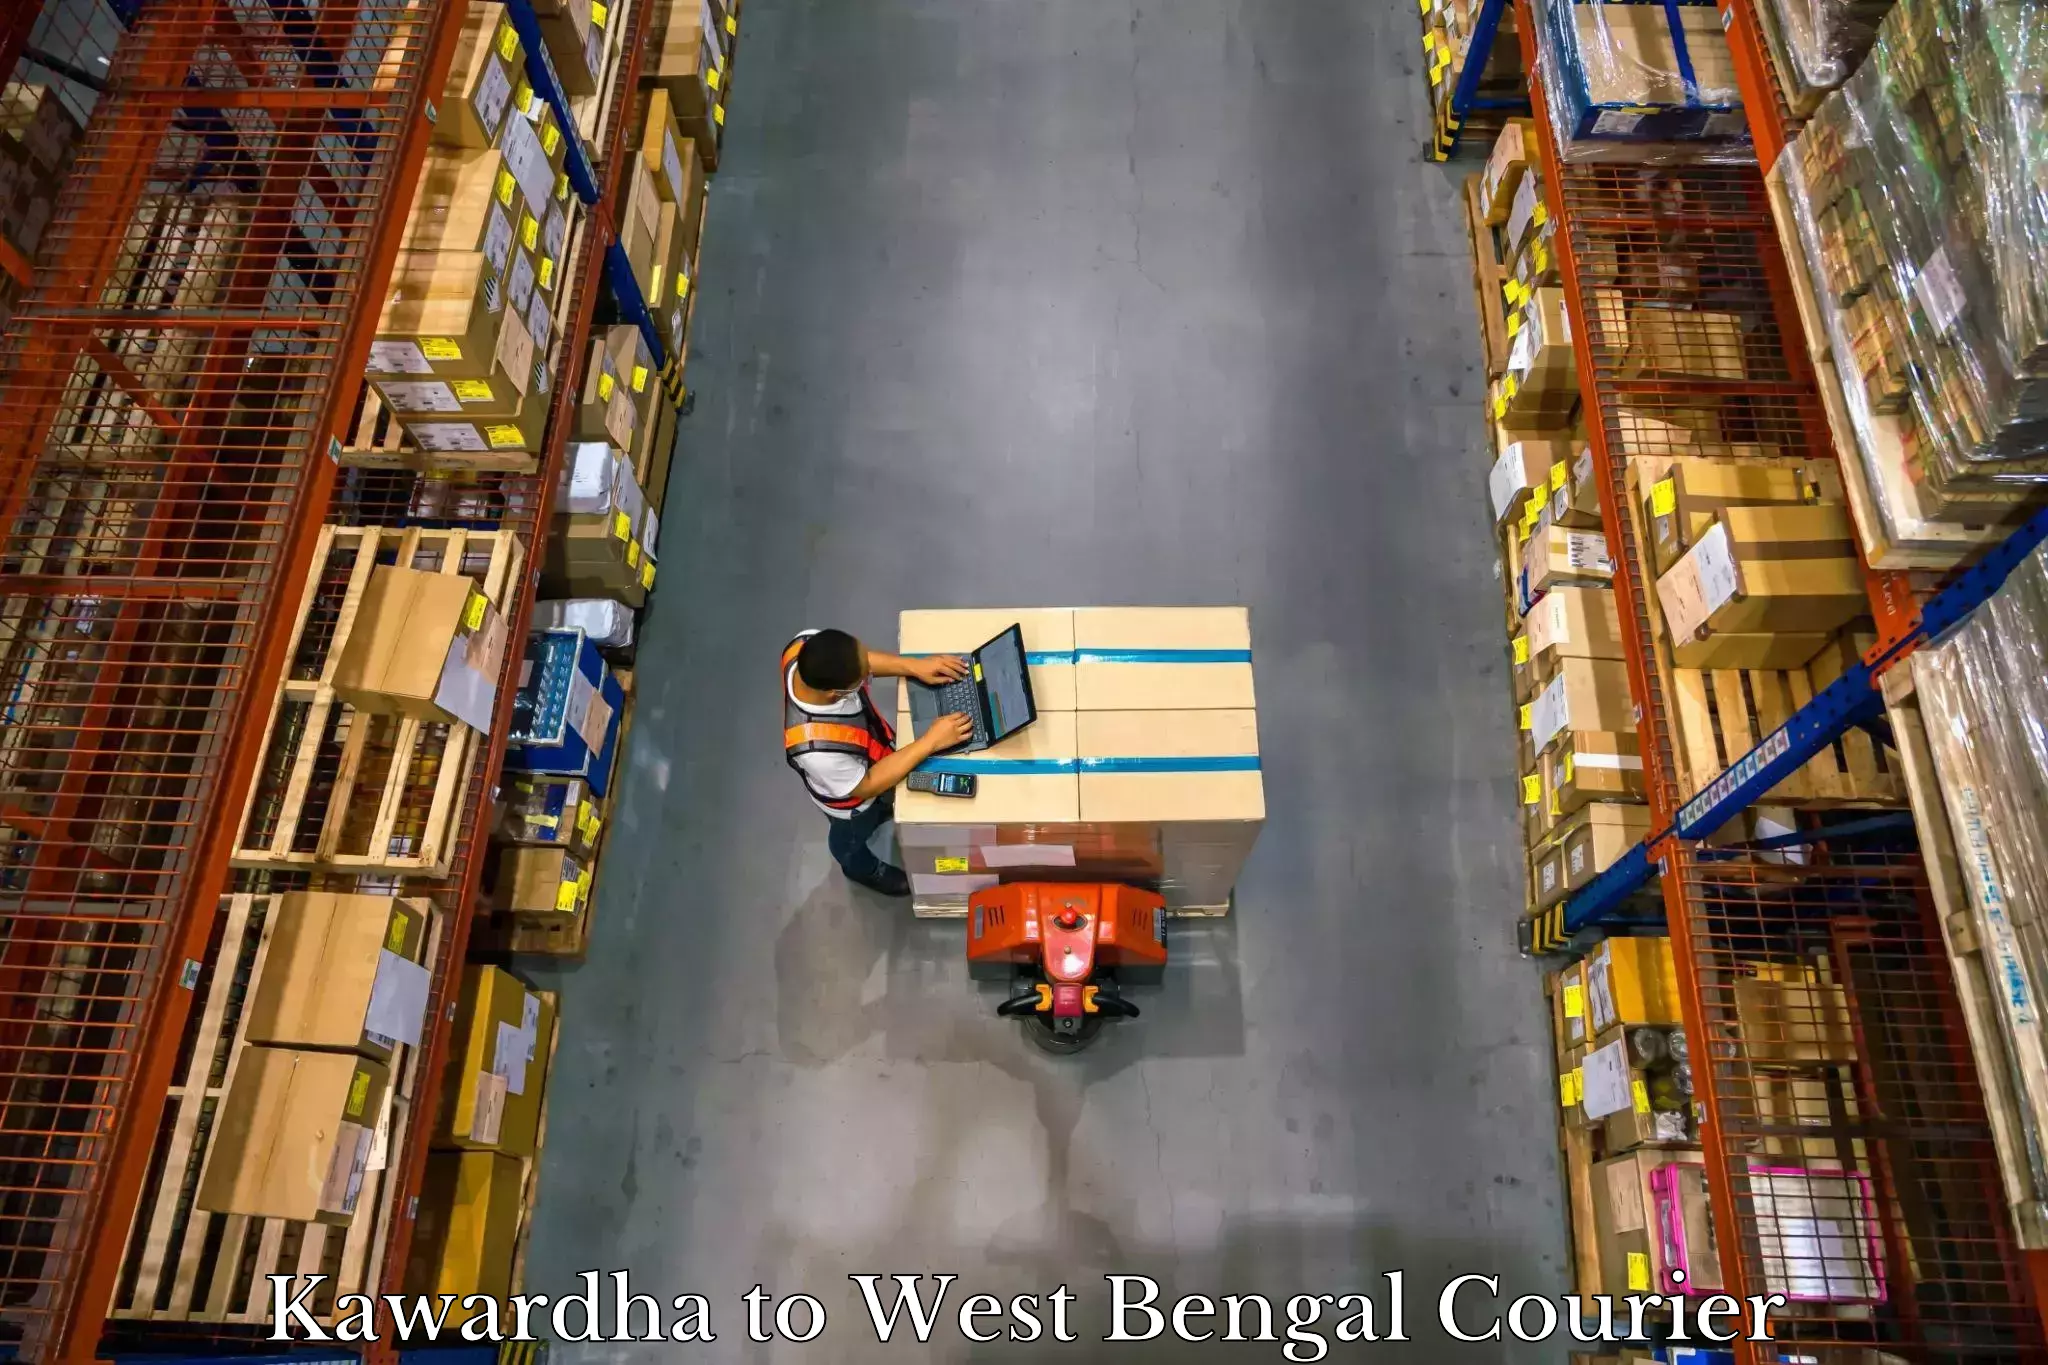 Automated luggage transport Kawardha to West Bengal